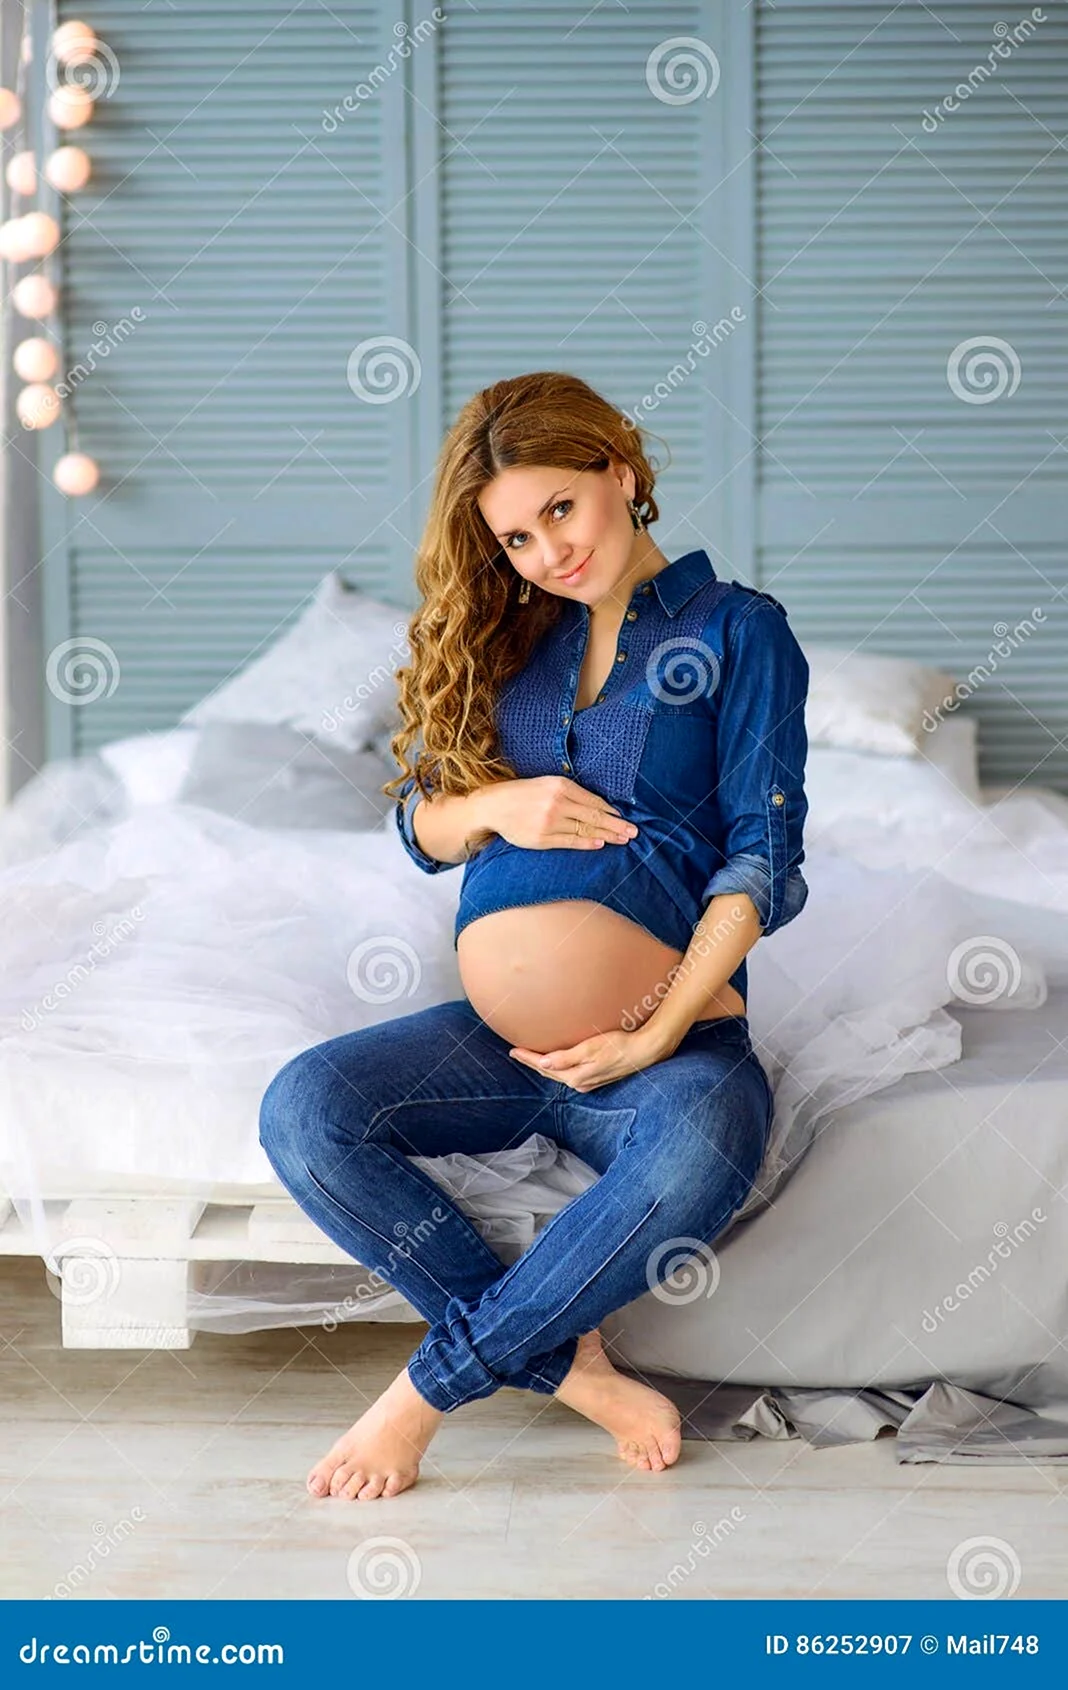 Беременная женщина в джинсах